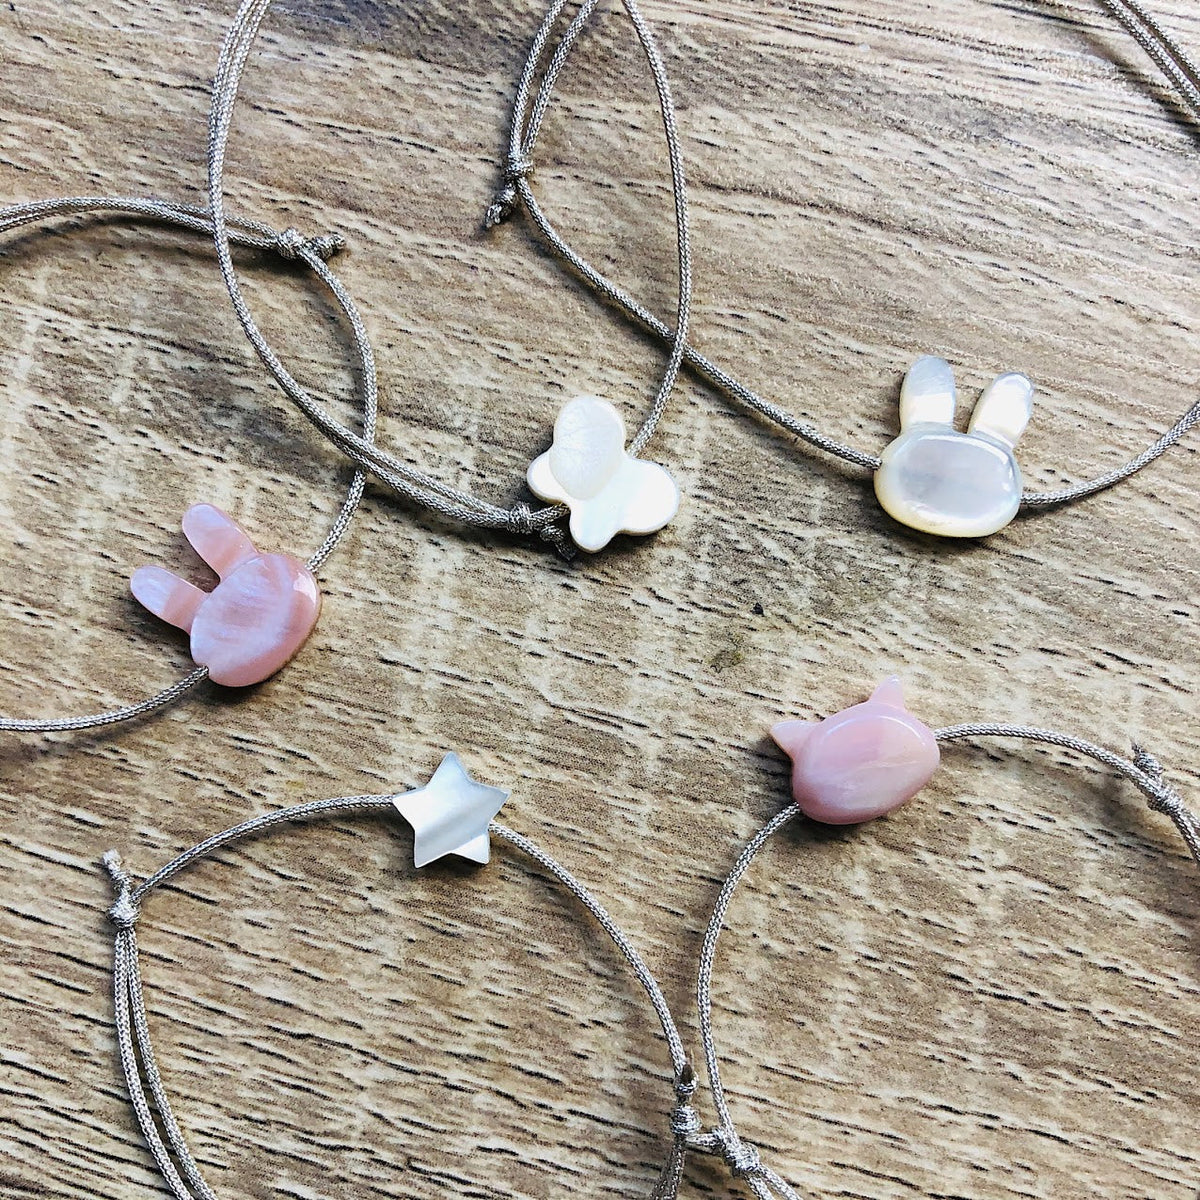 Bracelet en perles rose/ enfant/Atelier de Sylvie/Esprit Celtique/